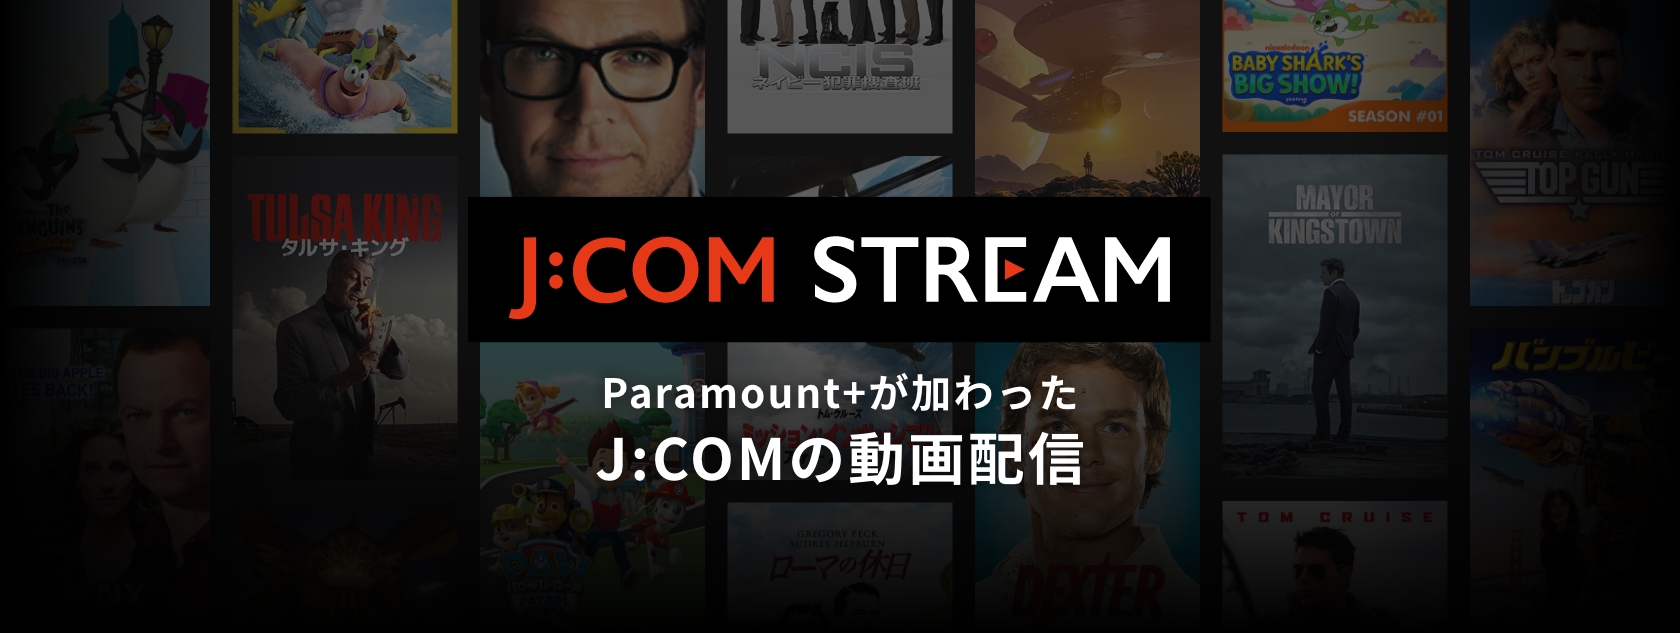 日本初上陸のParamount+が加わったJ:COMの動画配信